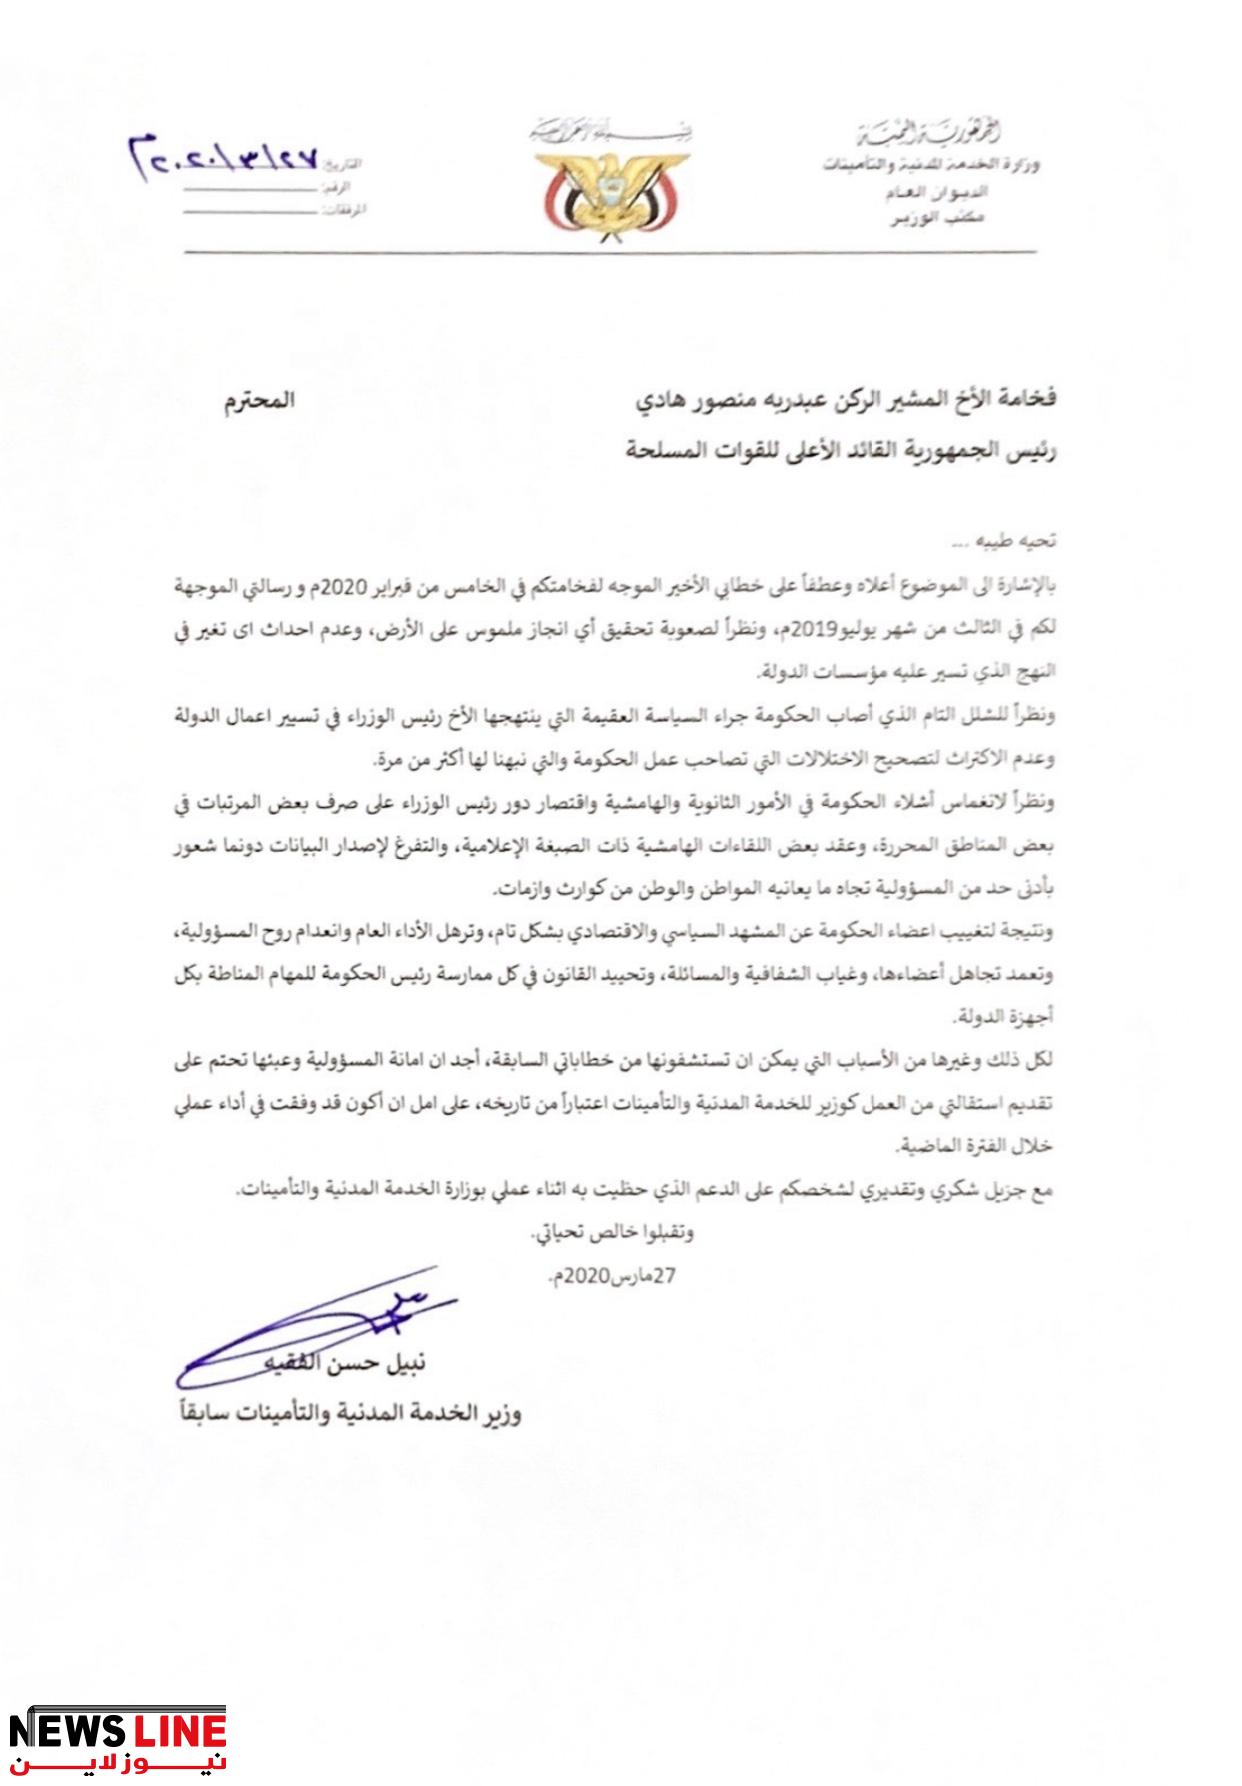 عاجل وبالوثيقة  : وزير في الشرعية يقدم  استقالته من منصبه للرئيس هادي  